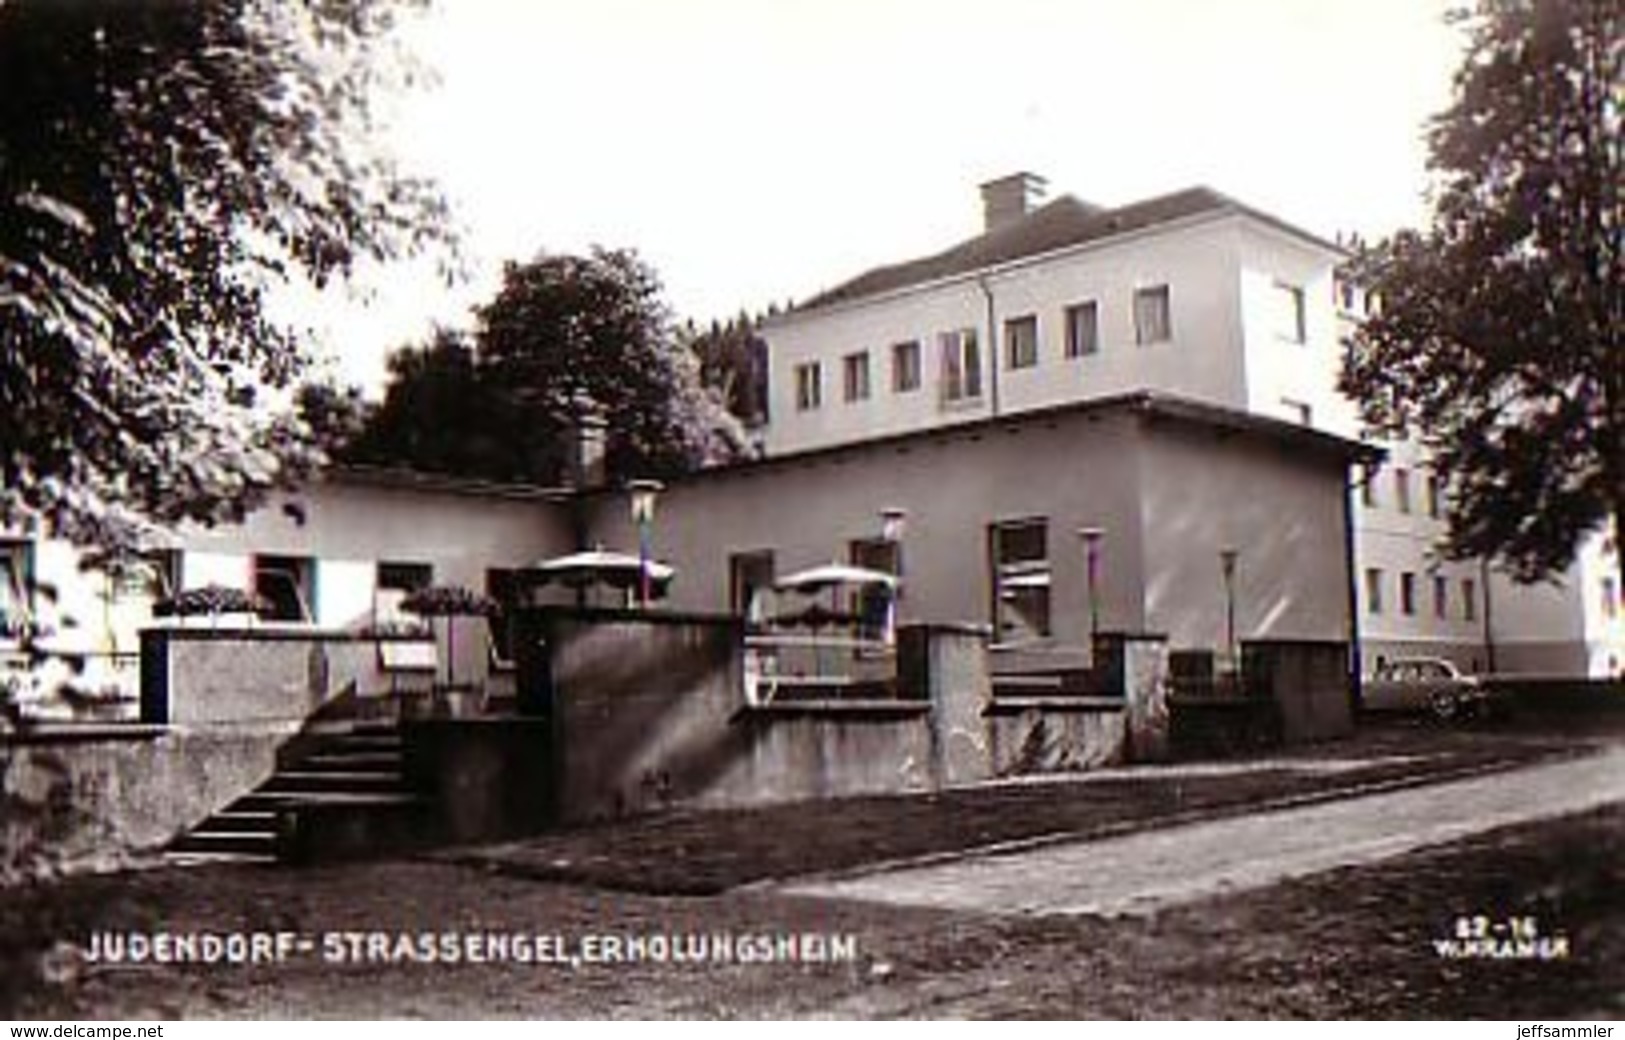 Judendorf Strassengel - Erholungsheim - Judendorf-Strassengel